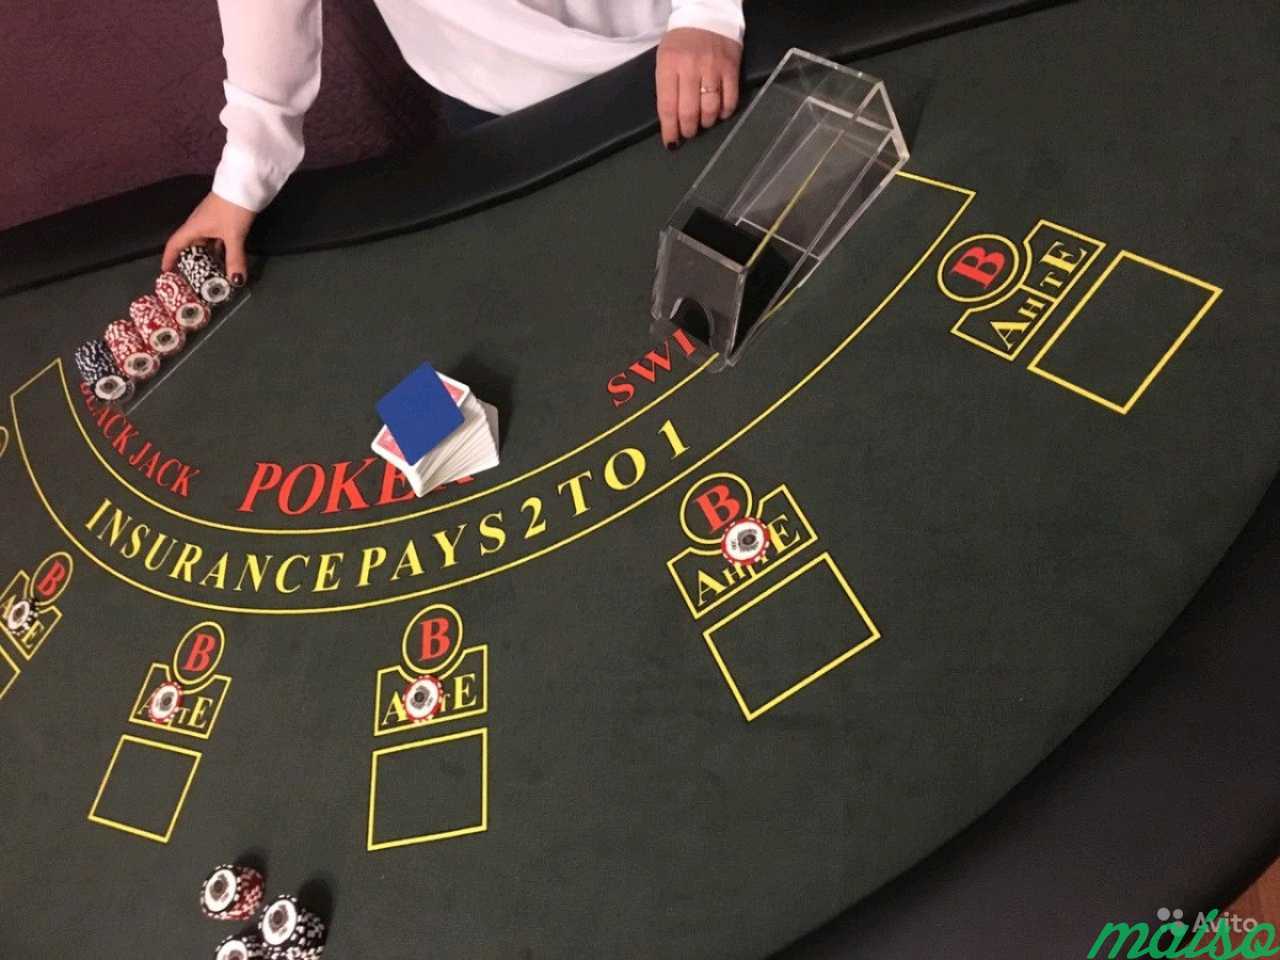 Выездное фан казино с покером, рулеткой, блекджеко в Санкт-Петербурге. Фото 6